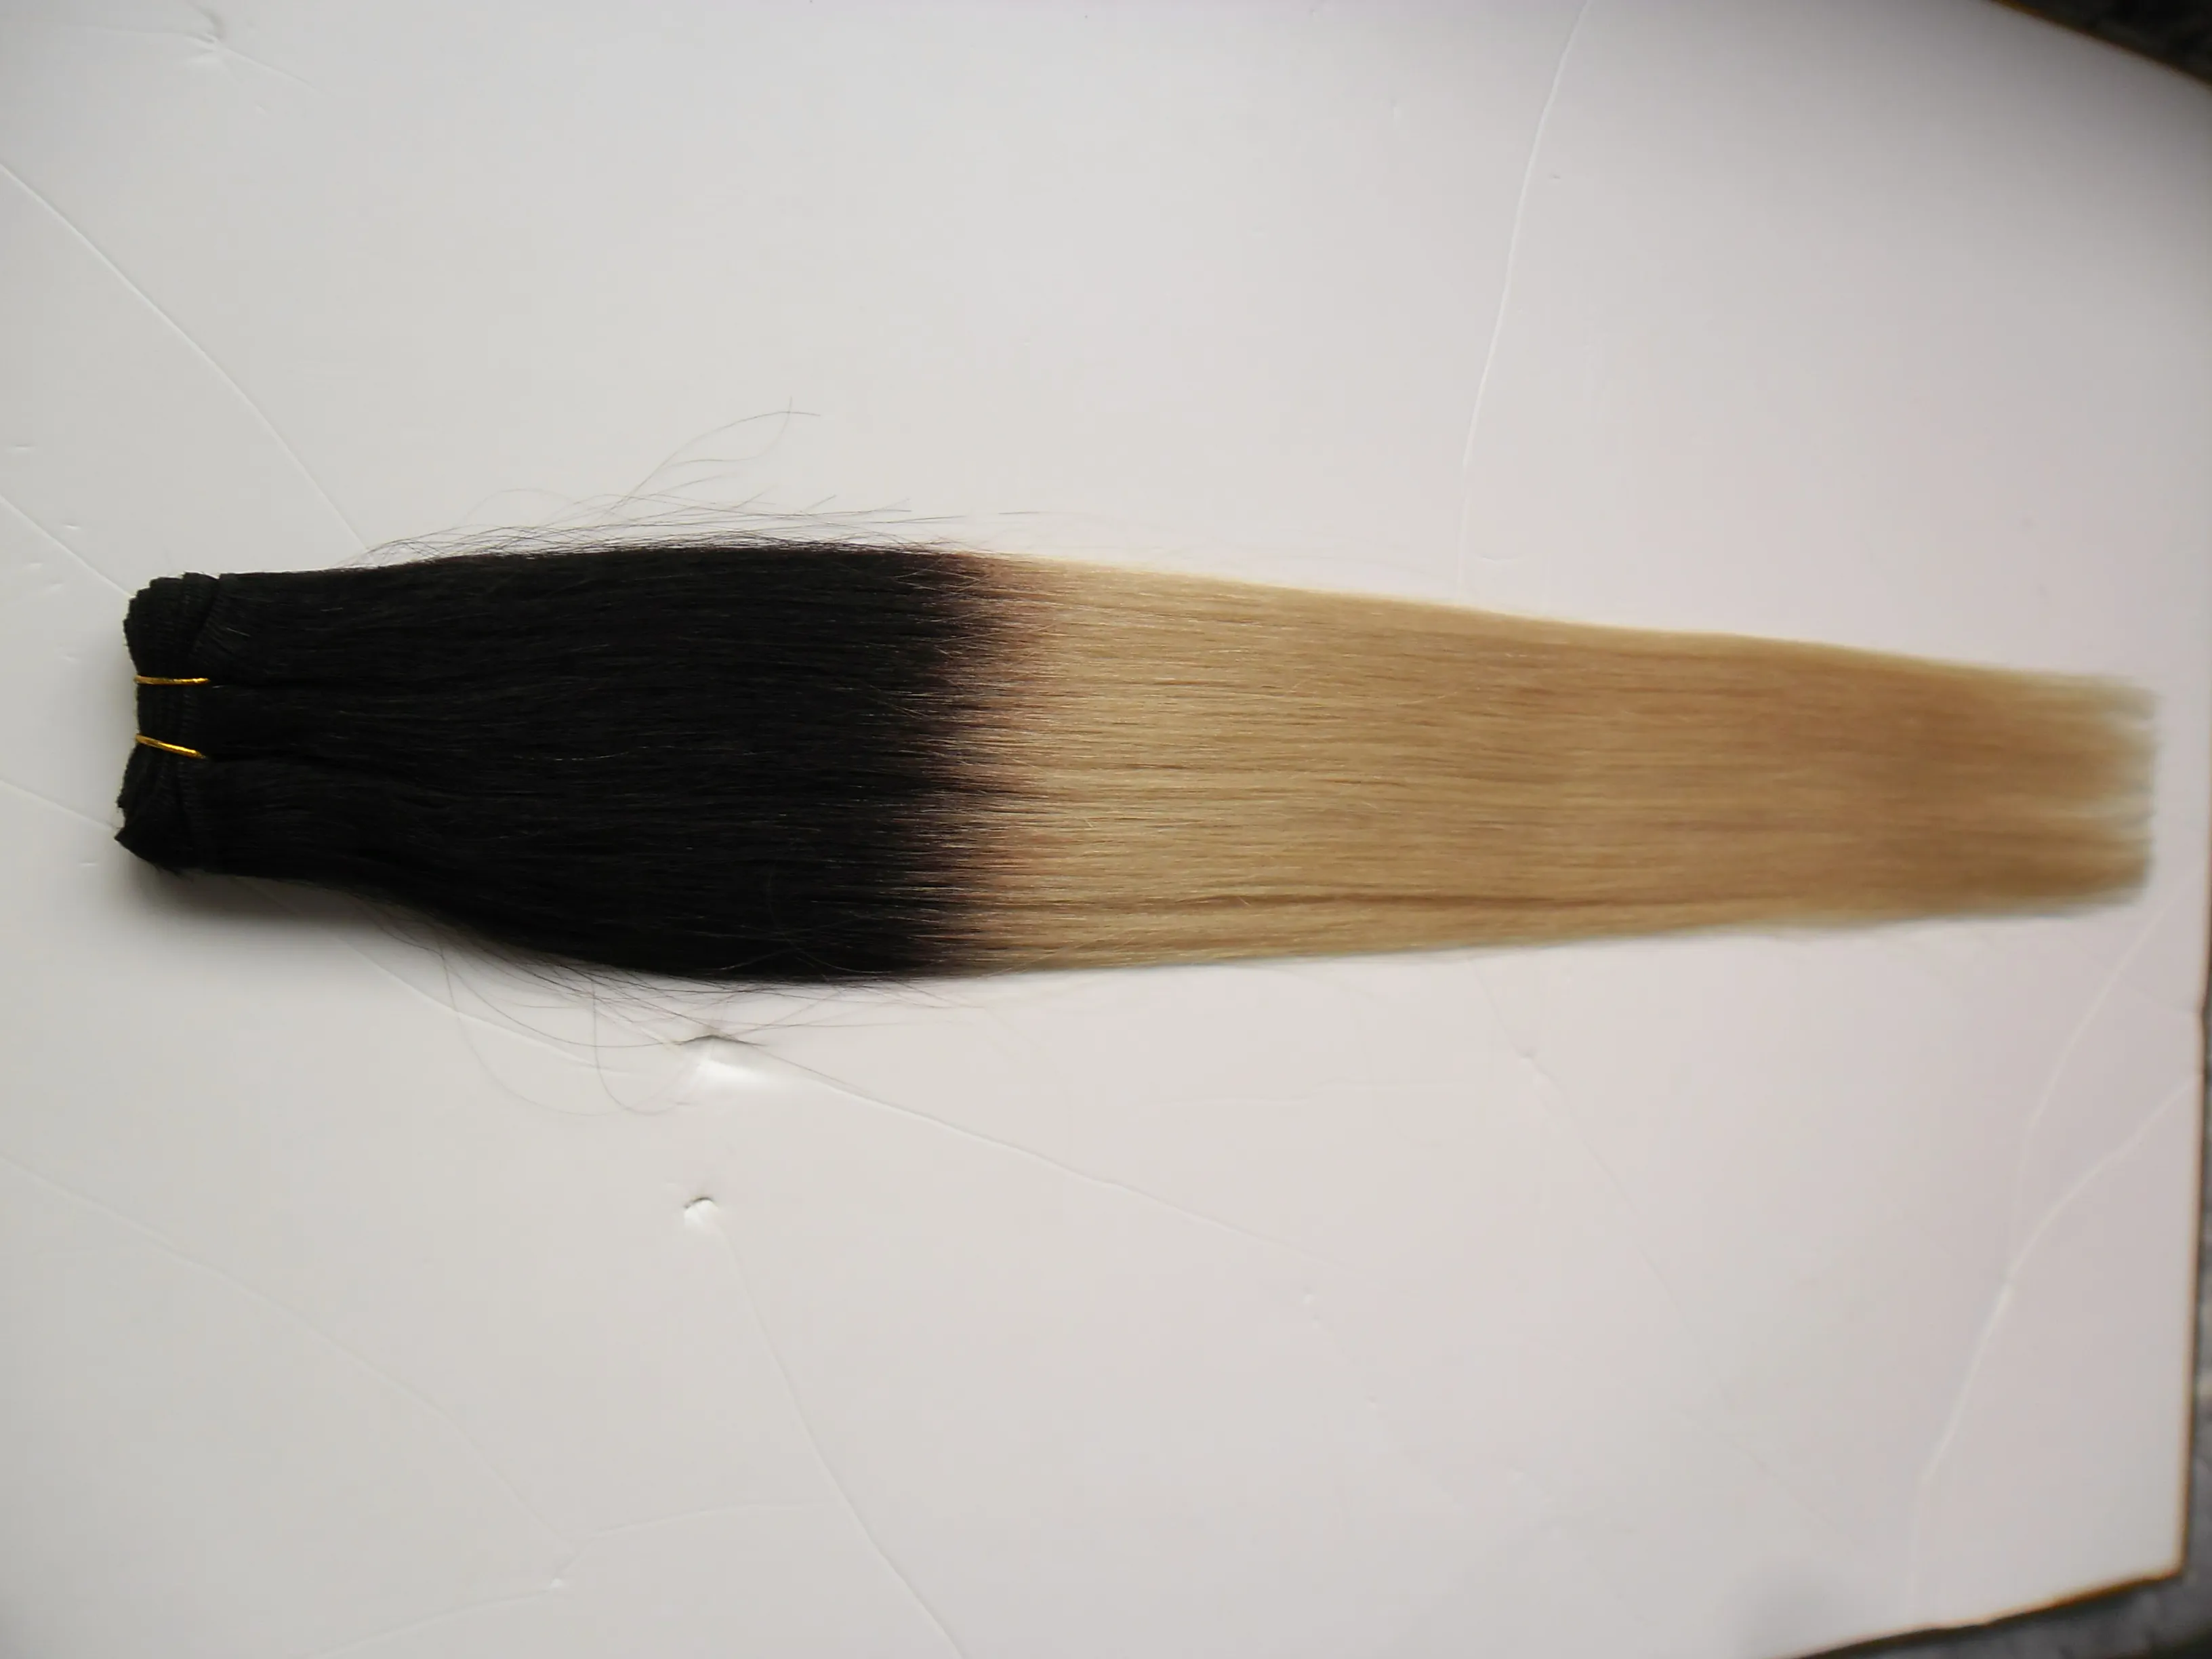 Ombre Brazylijskie proste włosy Blond Ludzkie włosy wątek 1 Bundles Nonremy 100G 1B613 100 Human Hair Tkaing Double Weft2131533